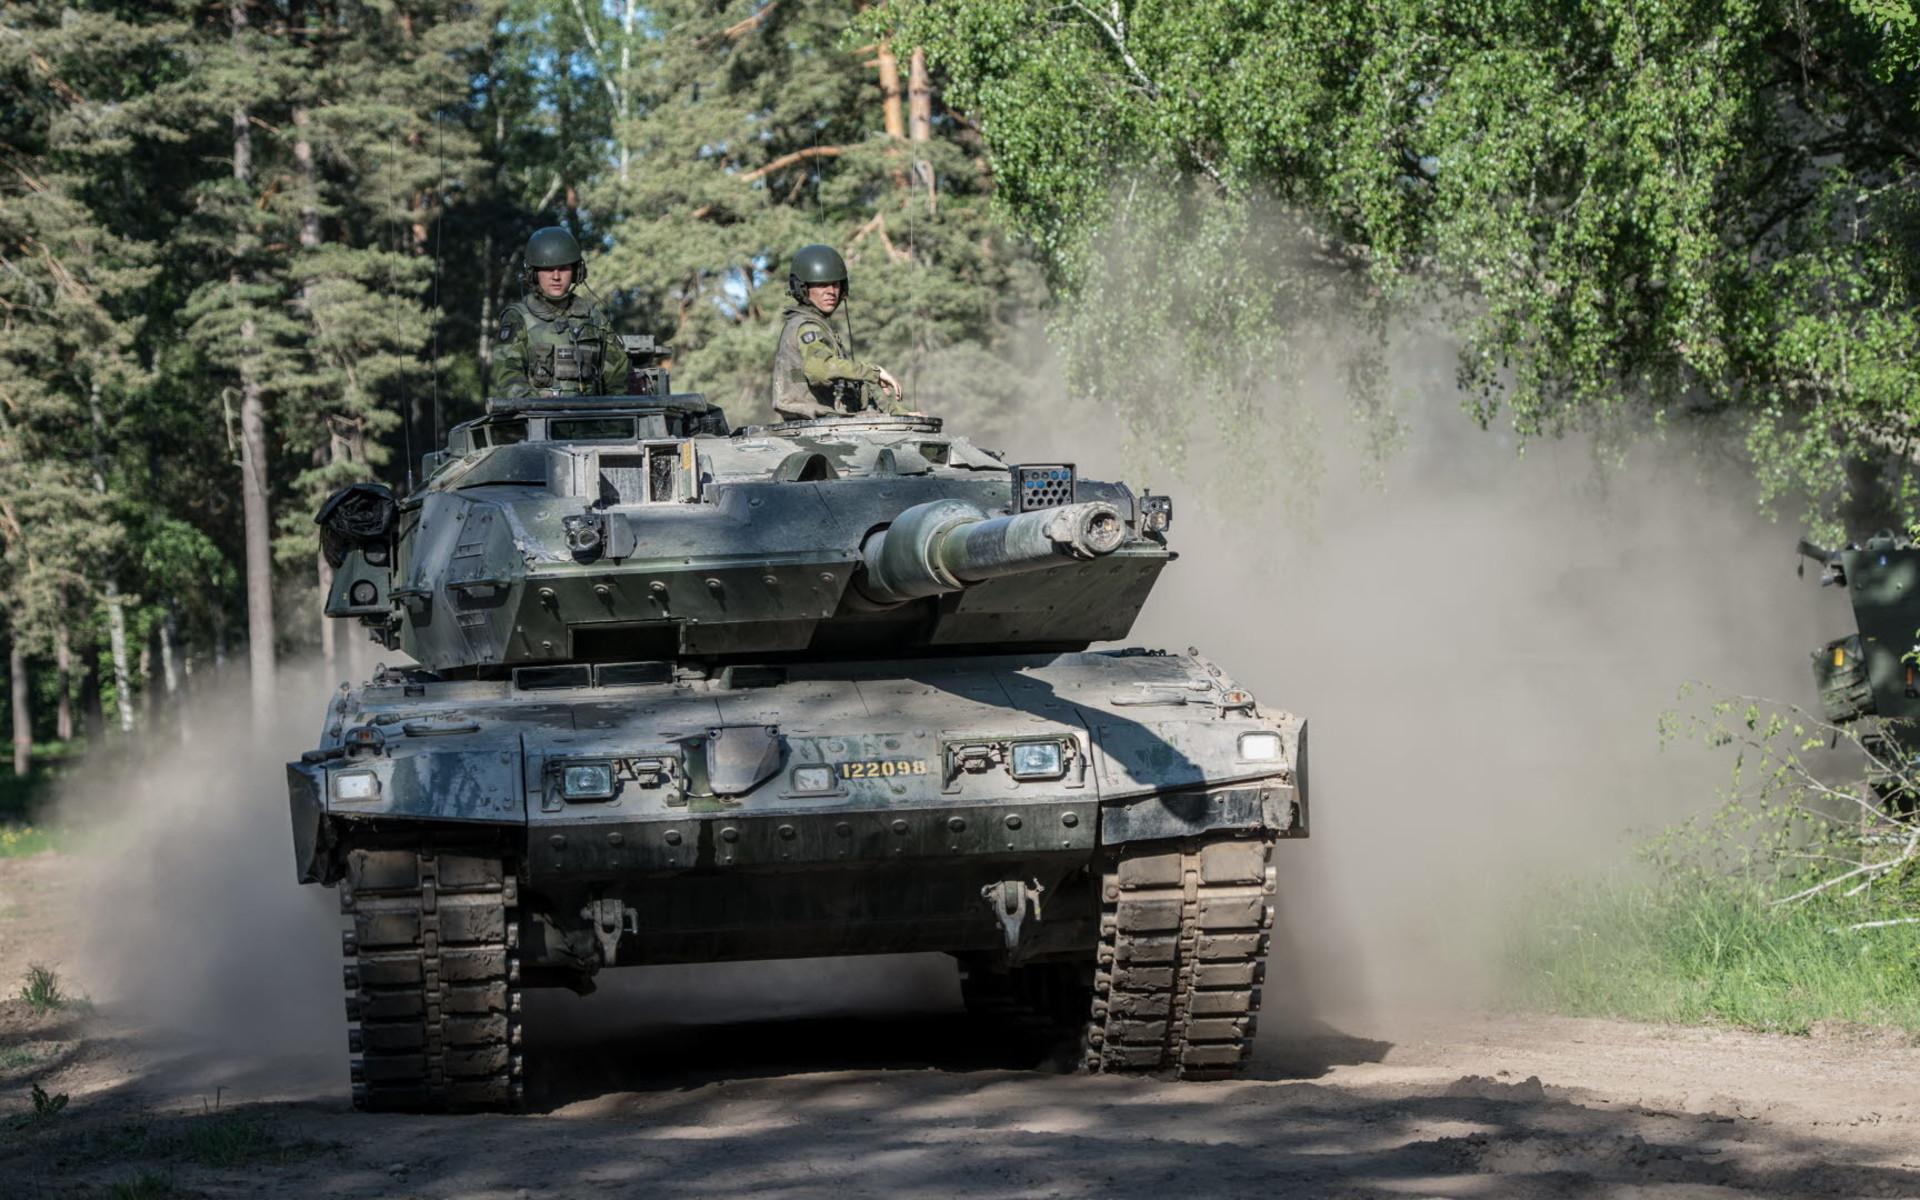 Stridsvagn 122 utgör kärnan i pansarbataljonerna och är en modifierad version av den tyska stridsvagnen Leopard 2. Utrustad med en 120 mm kanon som kan vridas 360 grader, två 7,62 mm kulsprutor och åtta rökkastare. Väger drygt 60 ton och har en maxhastighet på 70 km/h. Kan bekämpa mål på upp till fyra kilometers avstånd.